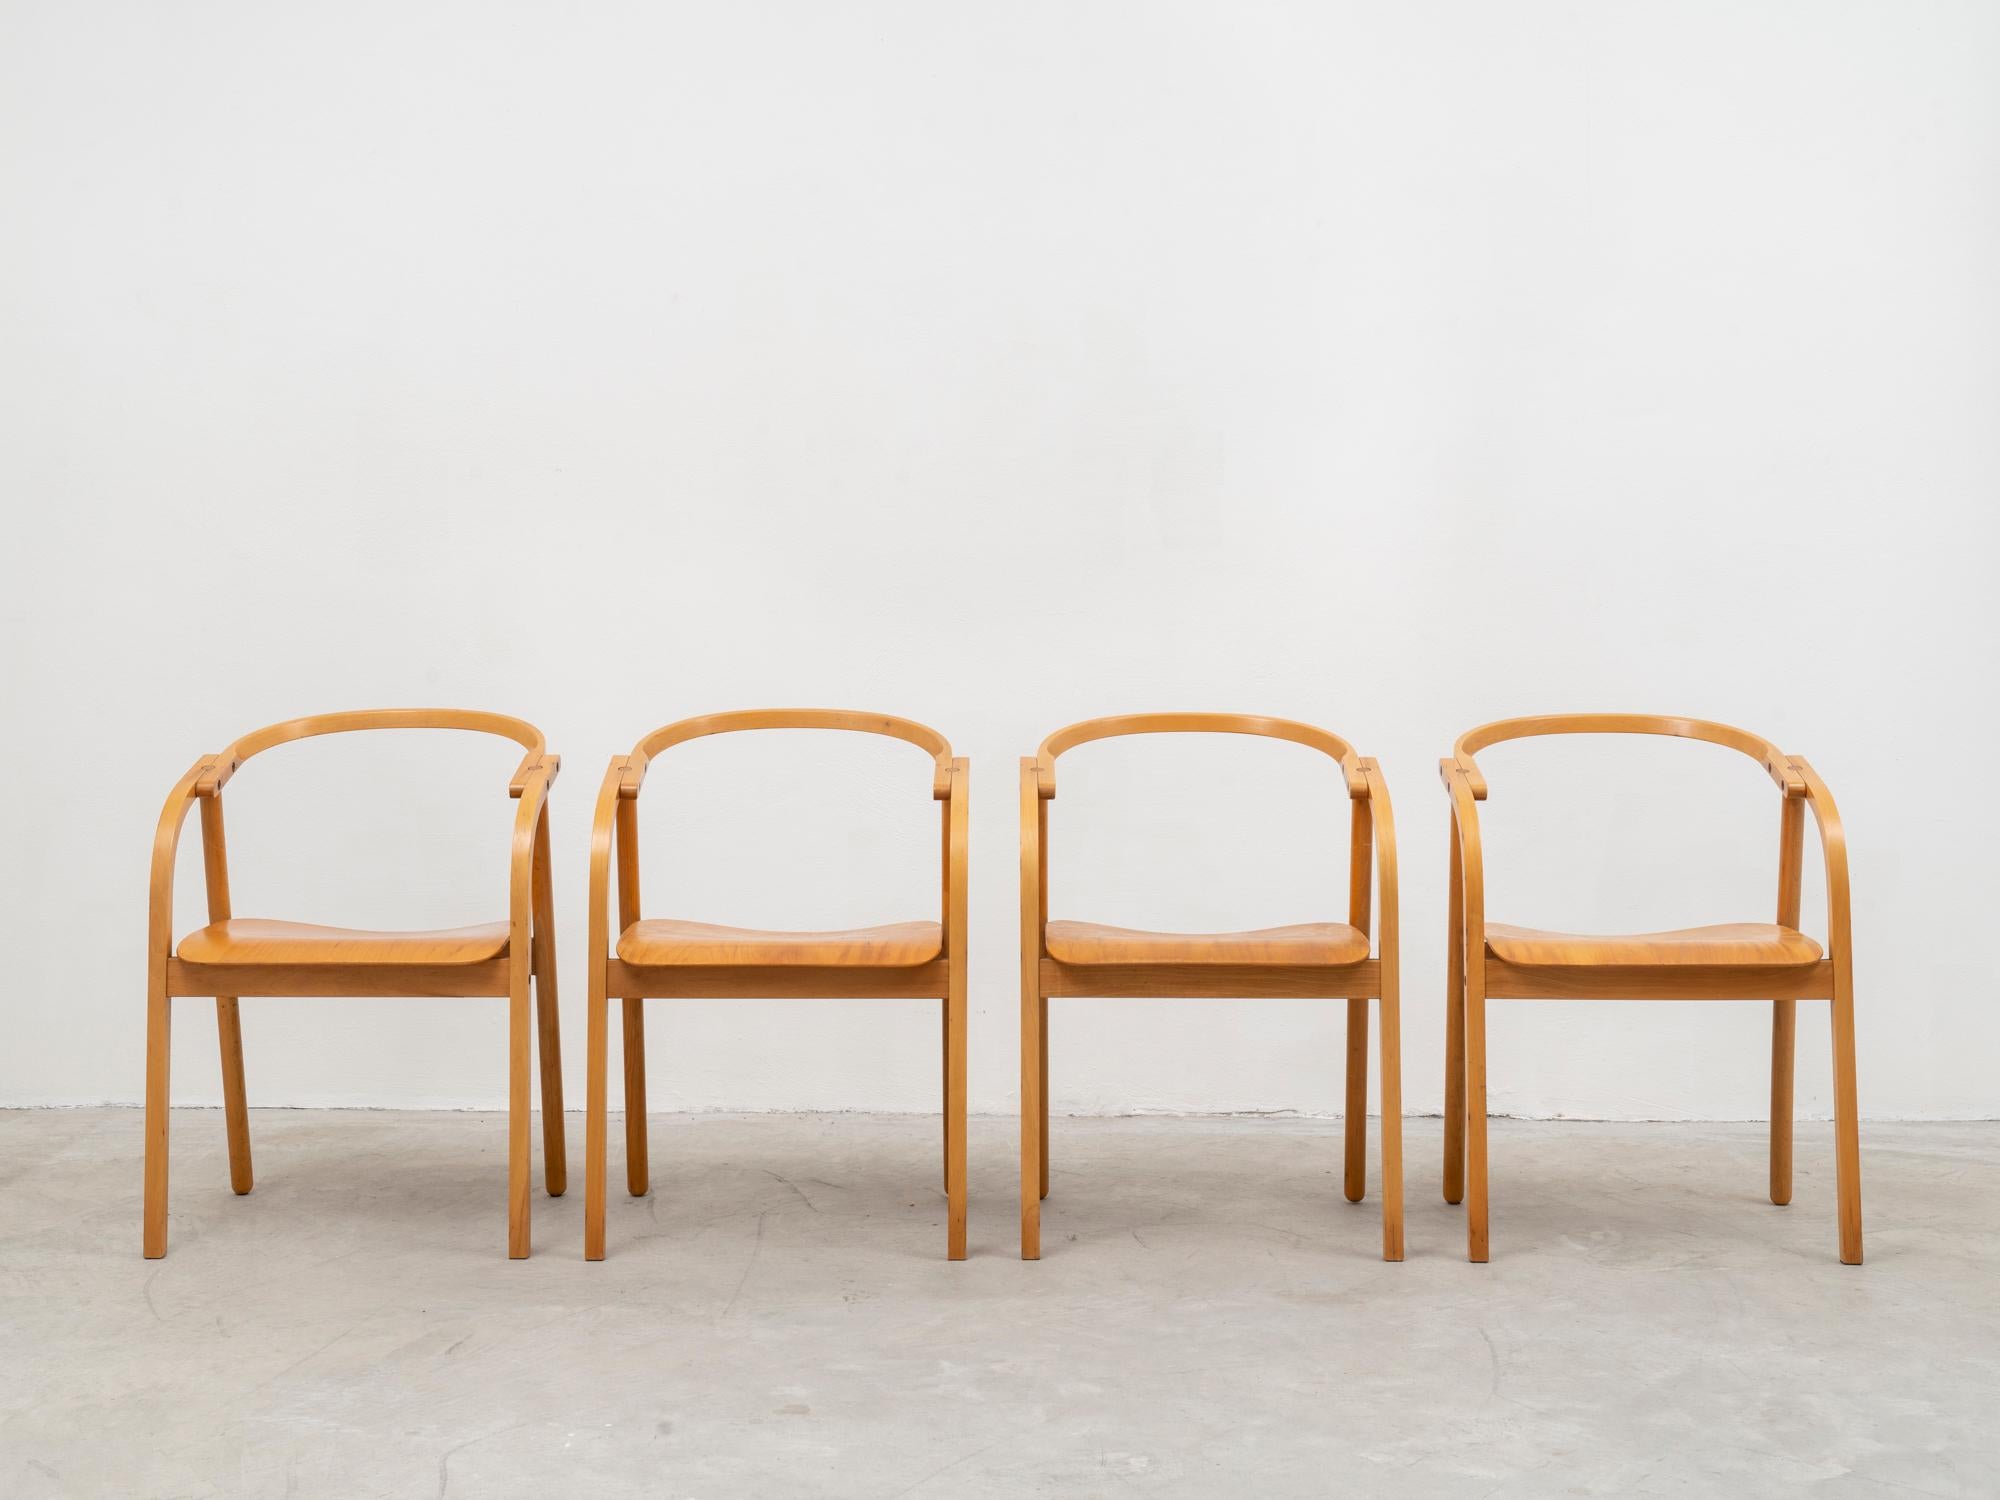 Sehr seltener Satz von Stühlen der Designer Werther Toffoloni und Piero Palange, hergestellt von Ibis. Dieses Modell kam 1981 in die engere Wahl für den Compasso d'Oro. Sie sind aus massiver, gebogener, gedämpfter Buche gefertigt, mit Ausnahme der